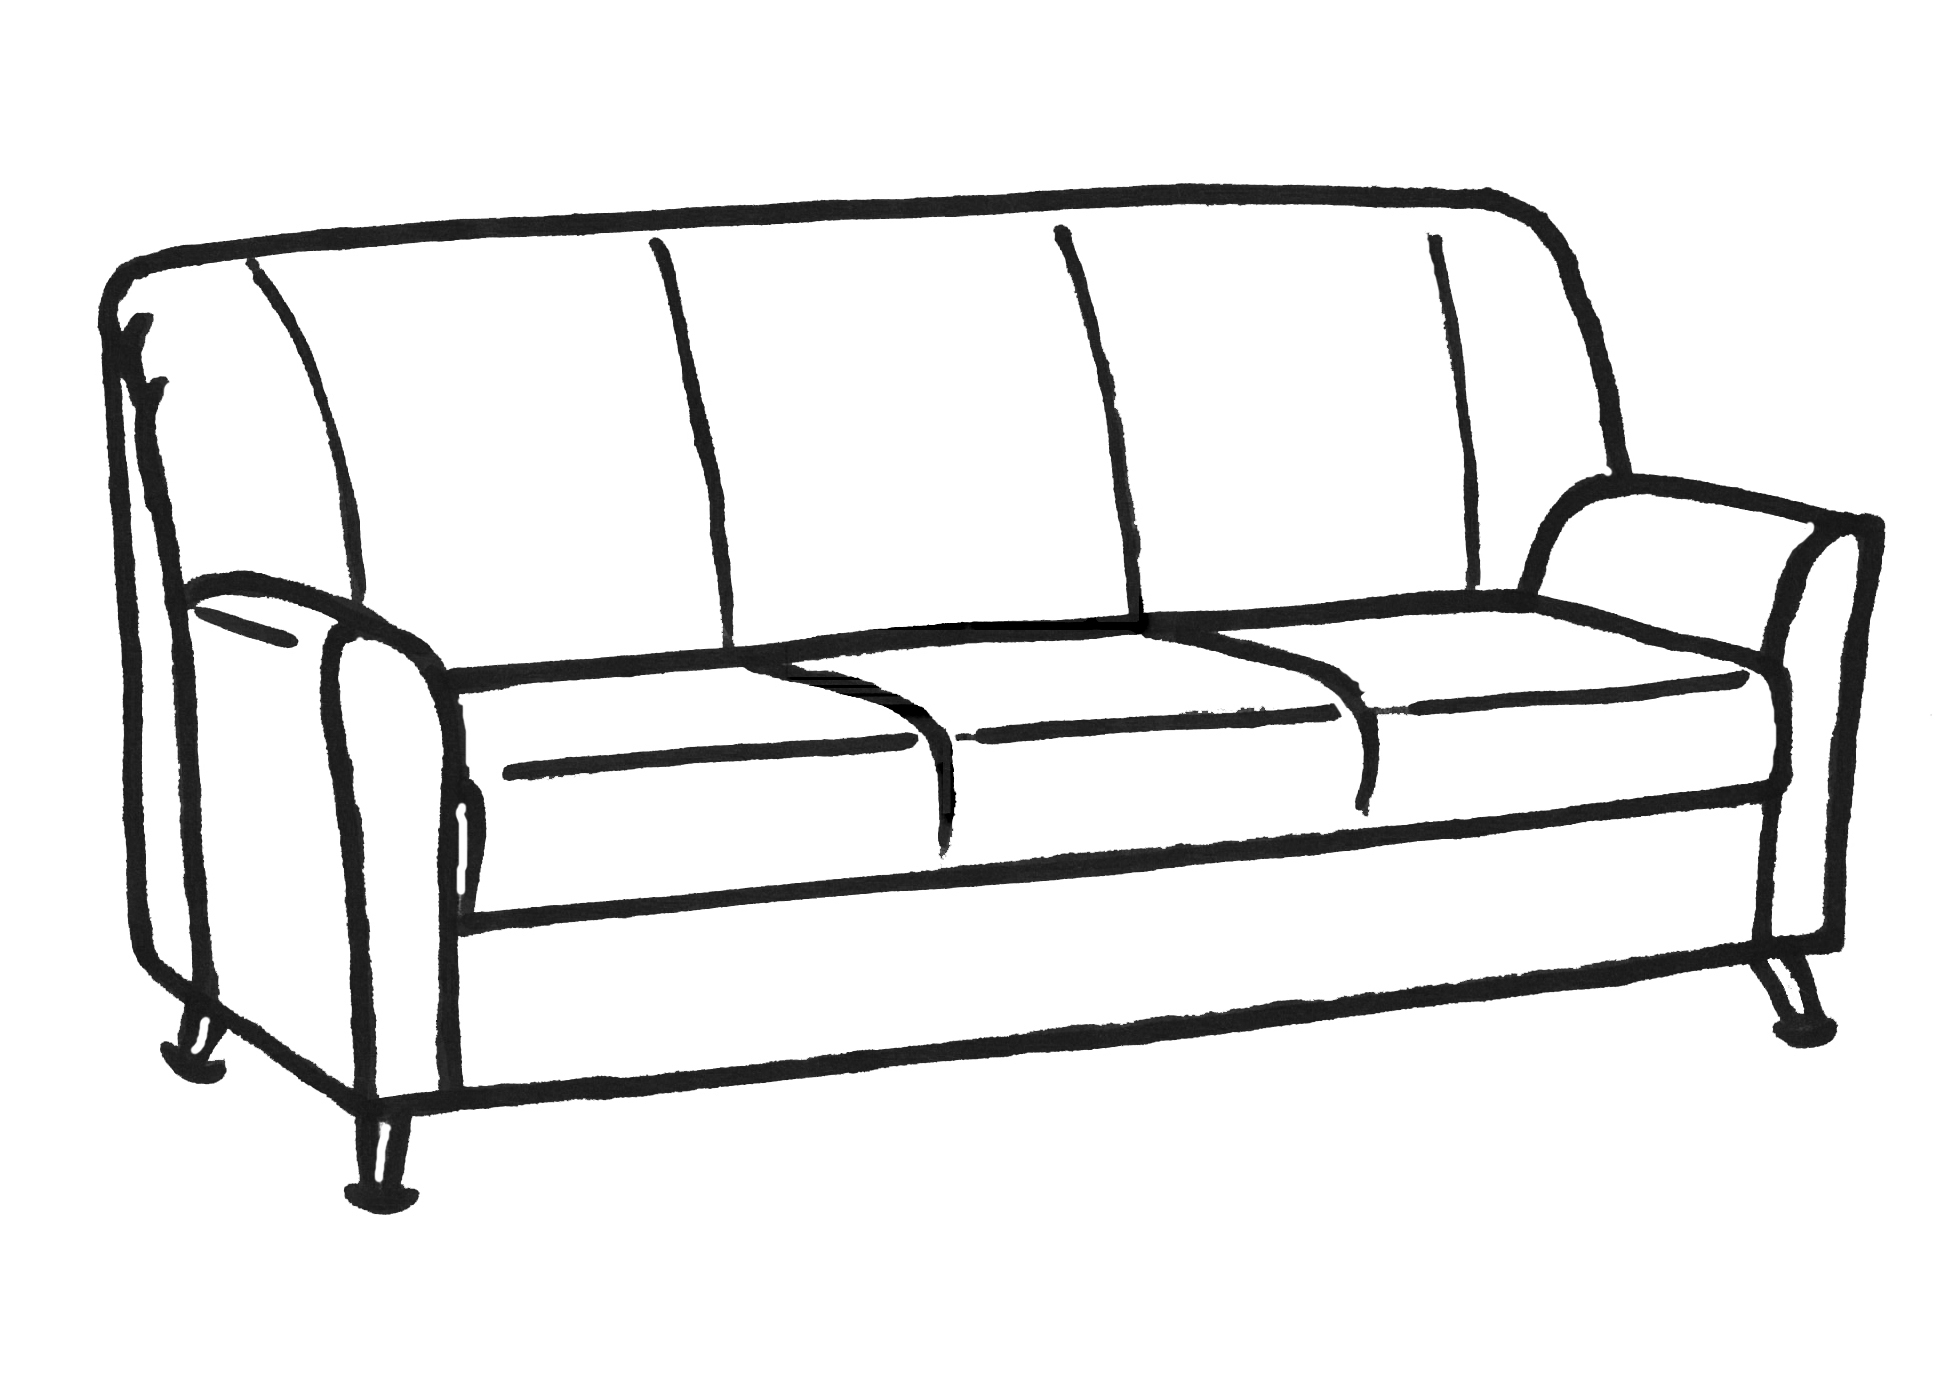 Рисовать диван для детей